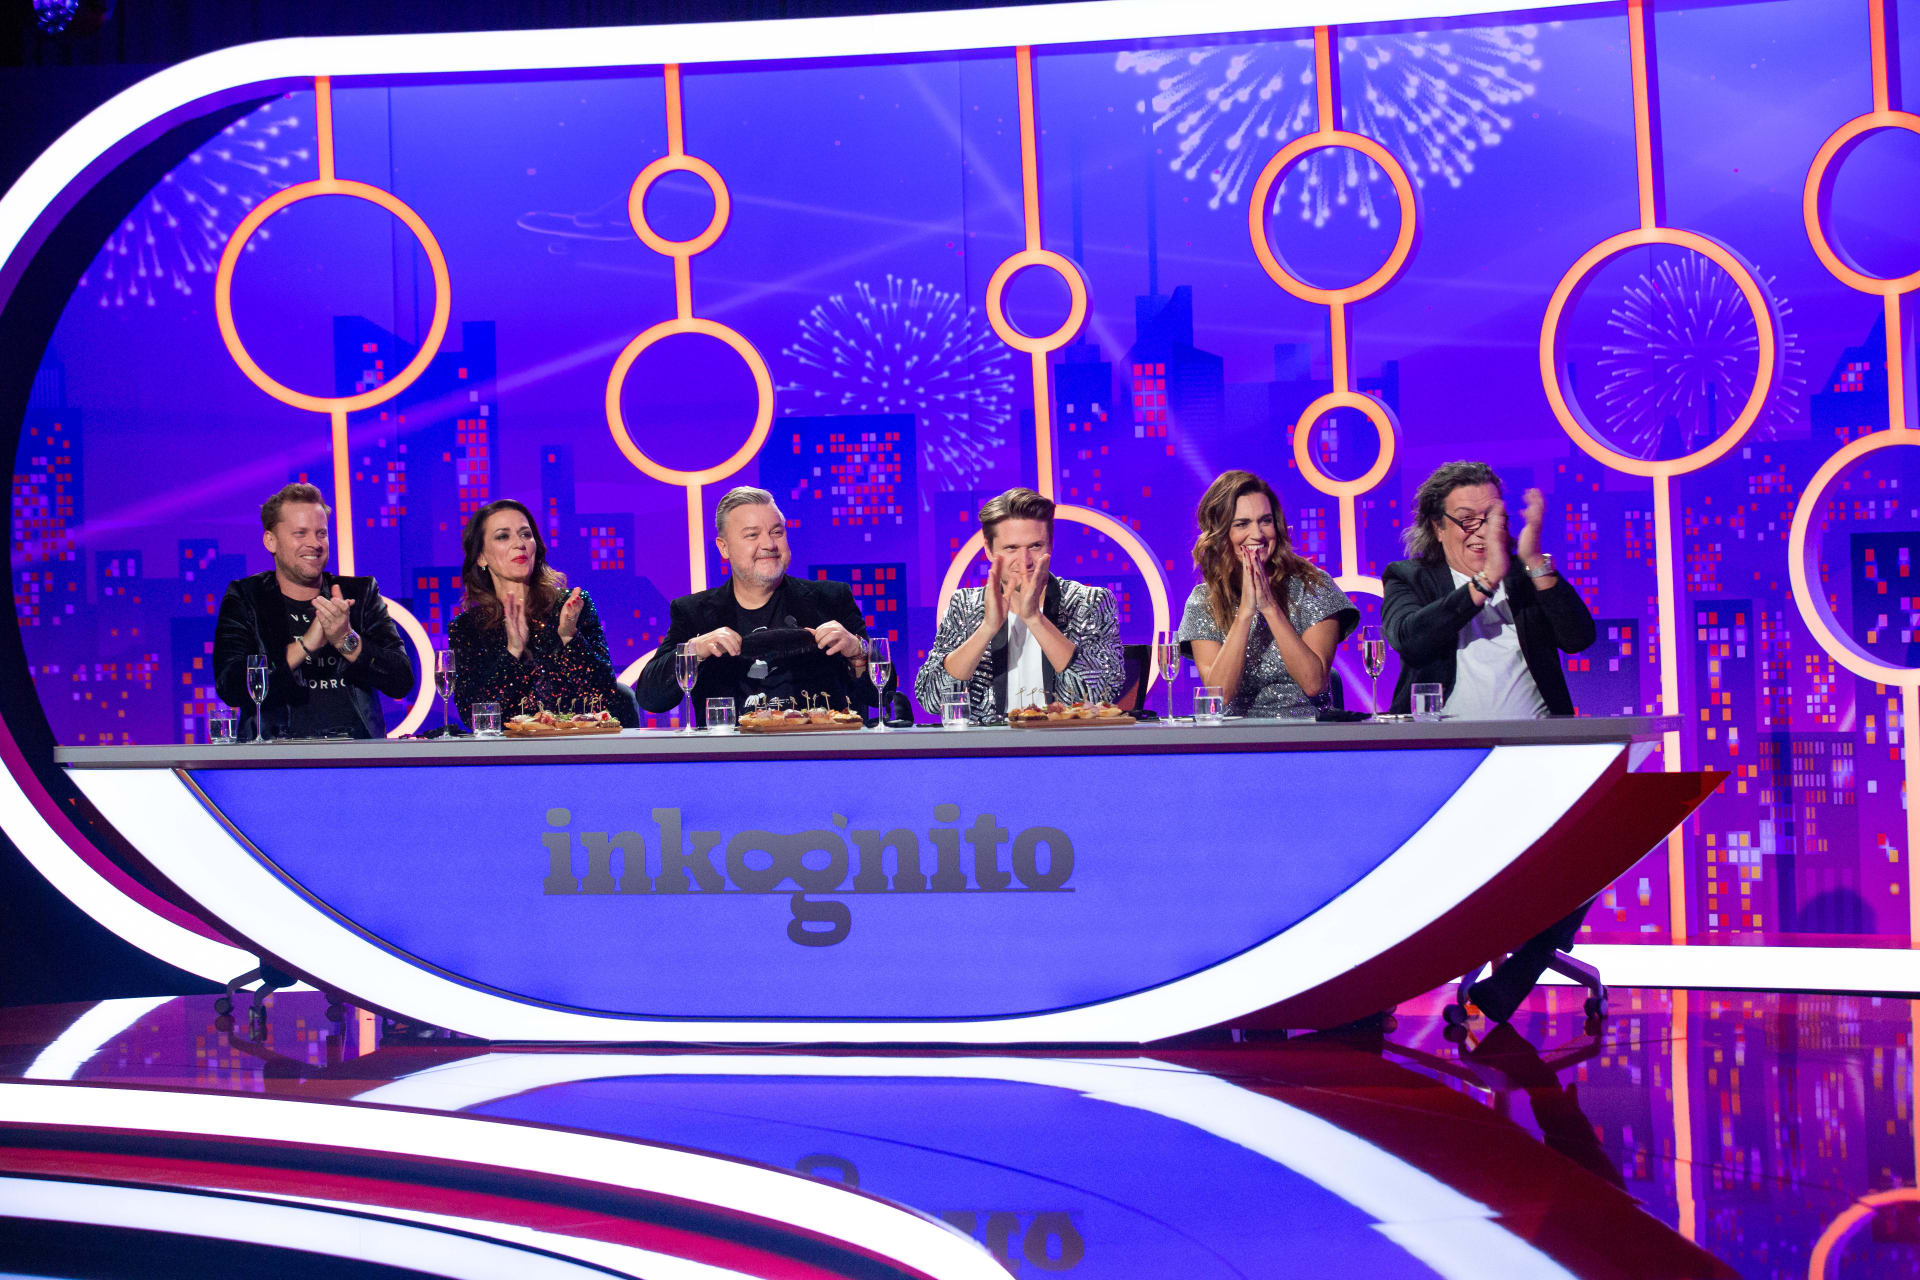 Silvestrovské Inkognito přivítá téměř všechny panelisty, kteří jsou s pořadem spjati od samého začátku.